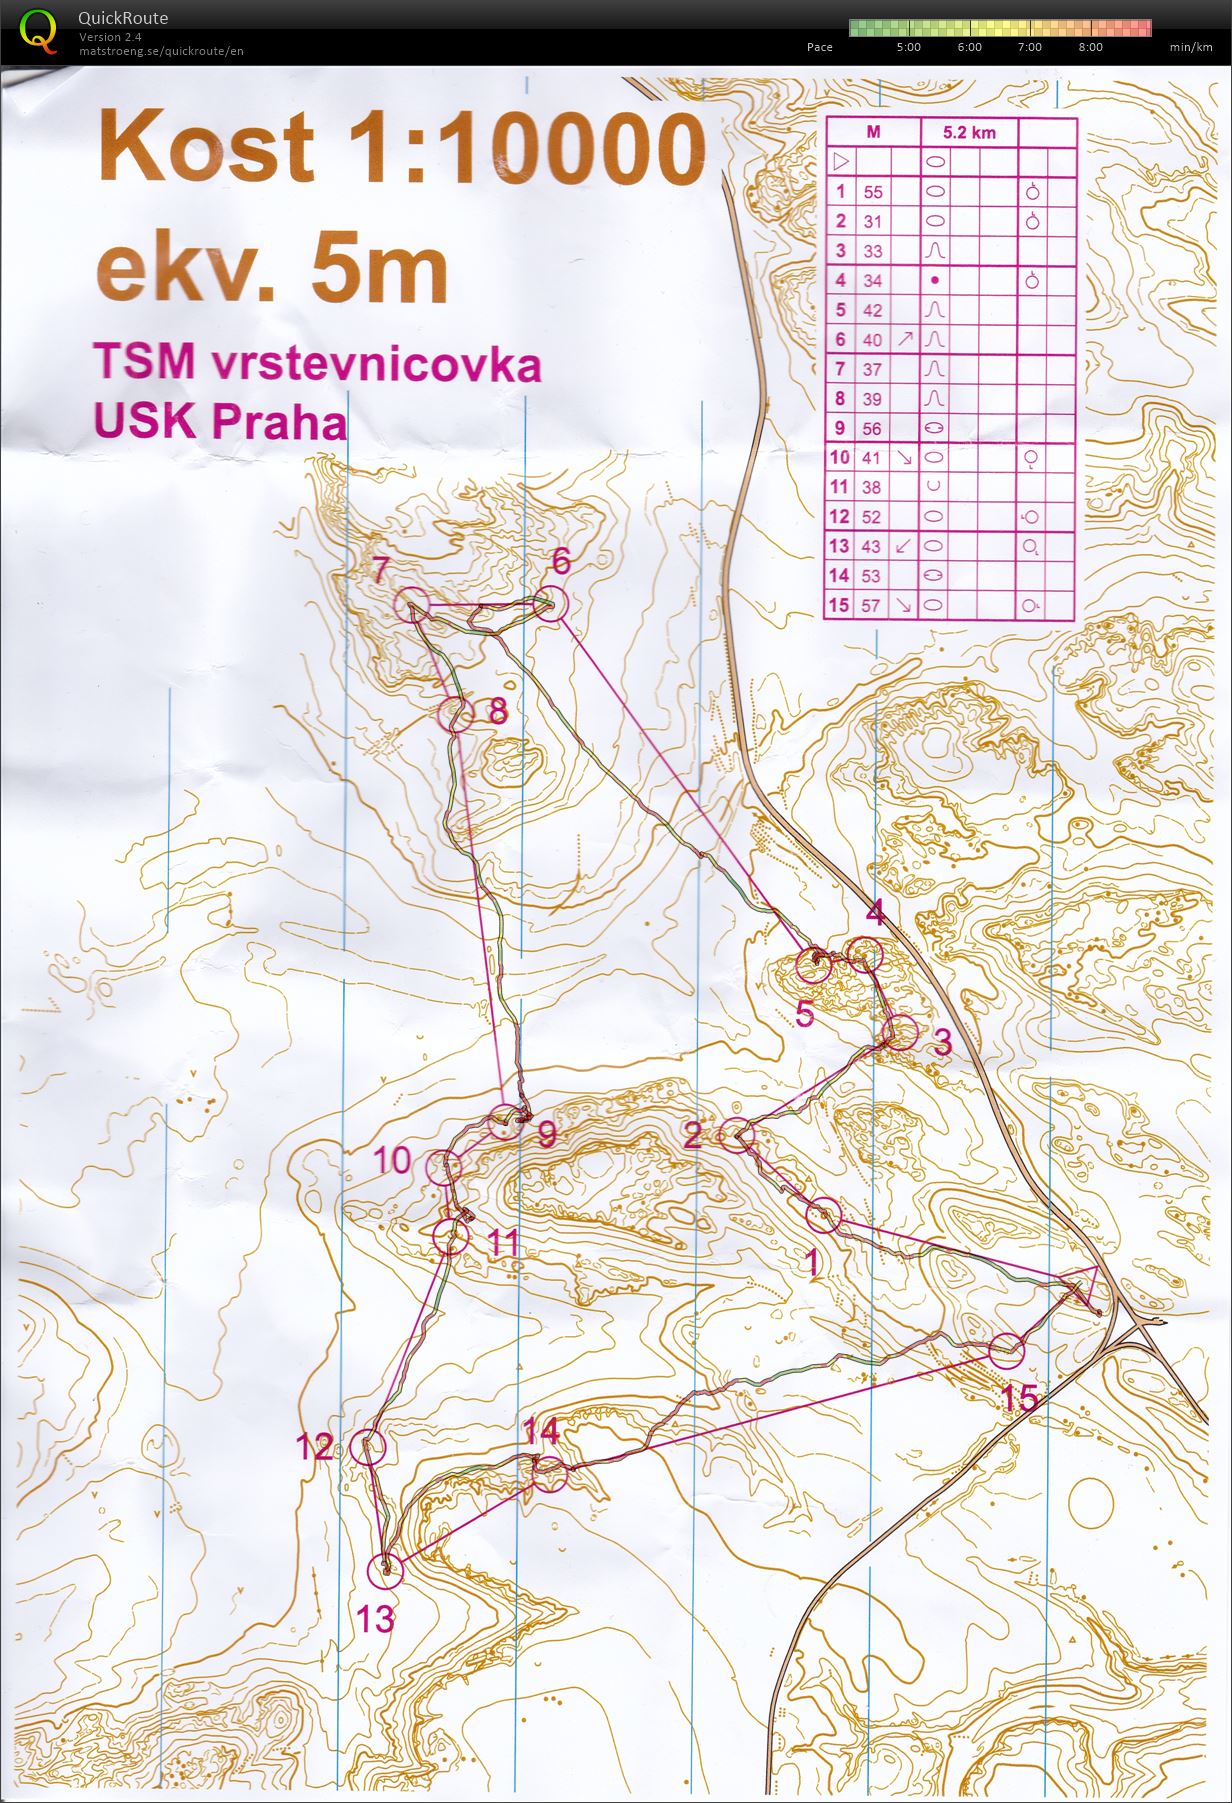 TSM Vrstevnicovka (02/05/2021)